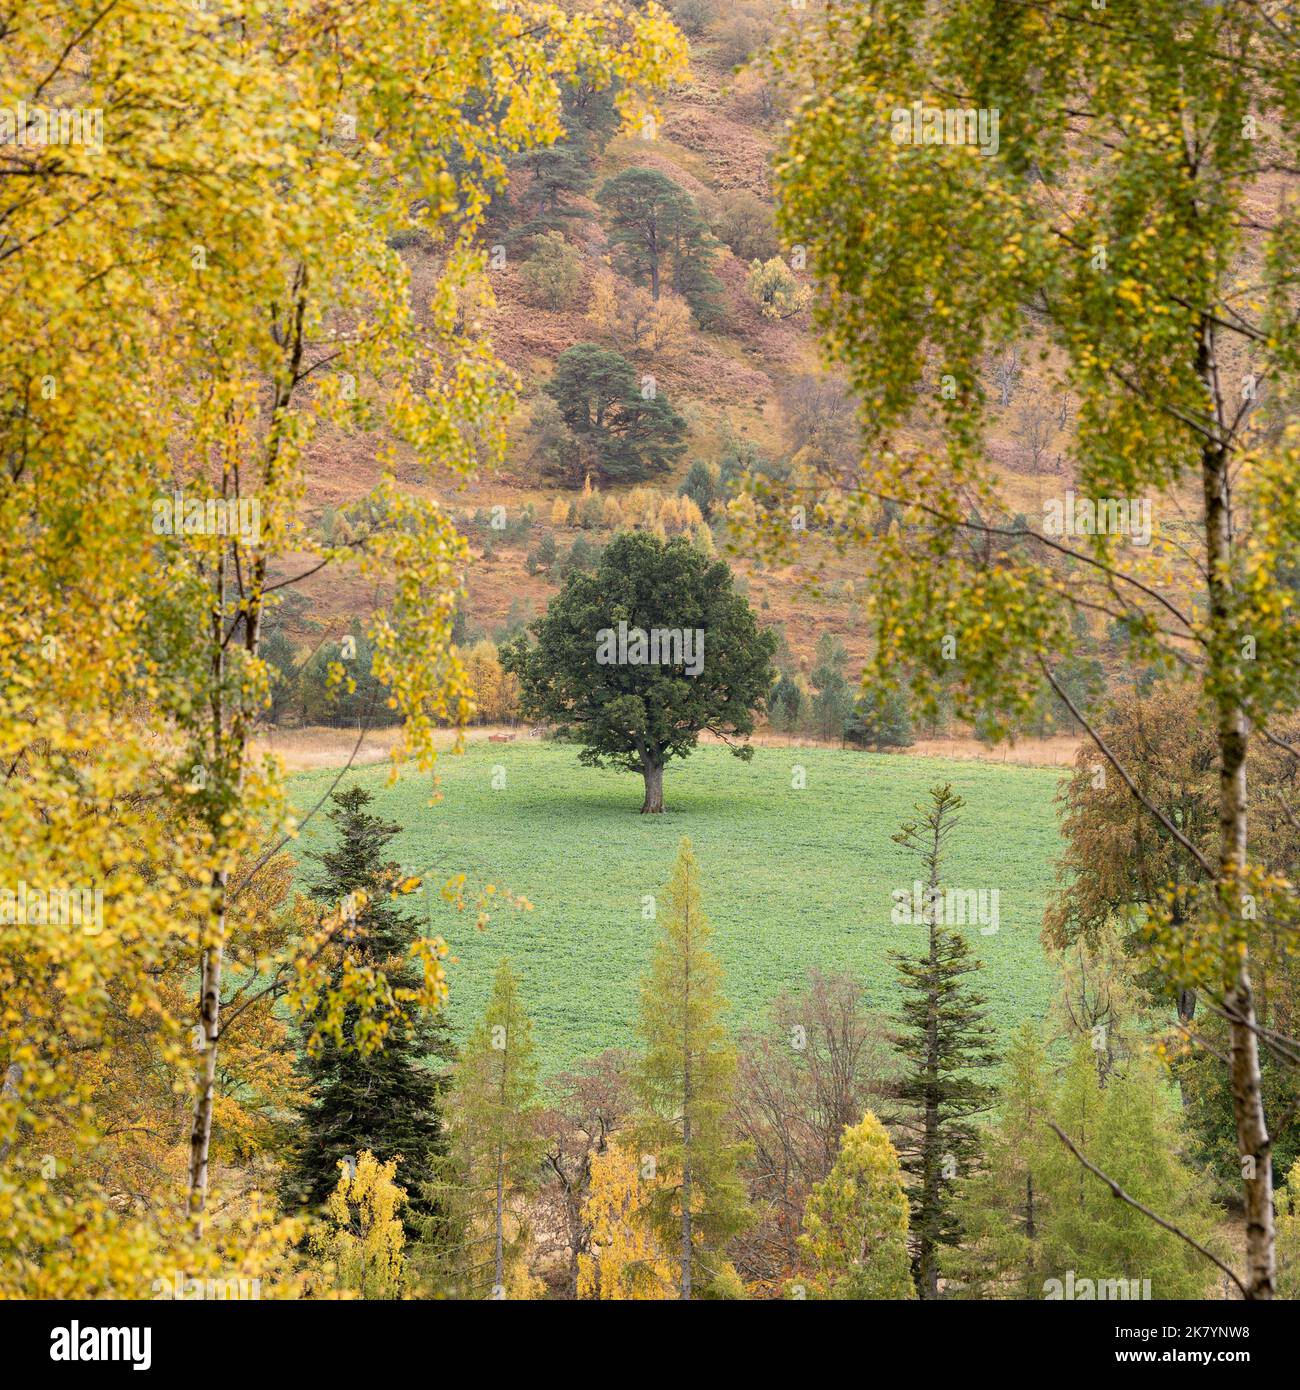 Ein vollständig grüner Laubbaum auf dem Feld, umgeben von den herbstlichen Farben von Bäumen wie Silberbirke, die sich bereits verändert haben - Schottland, Großbritannien Stockfoto